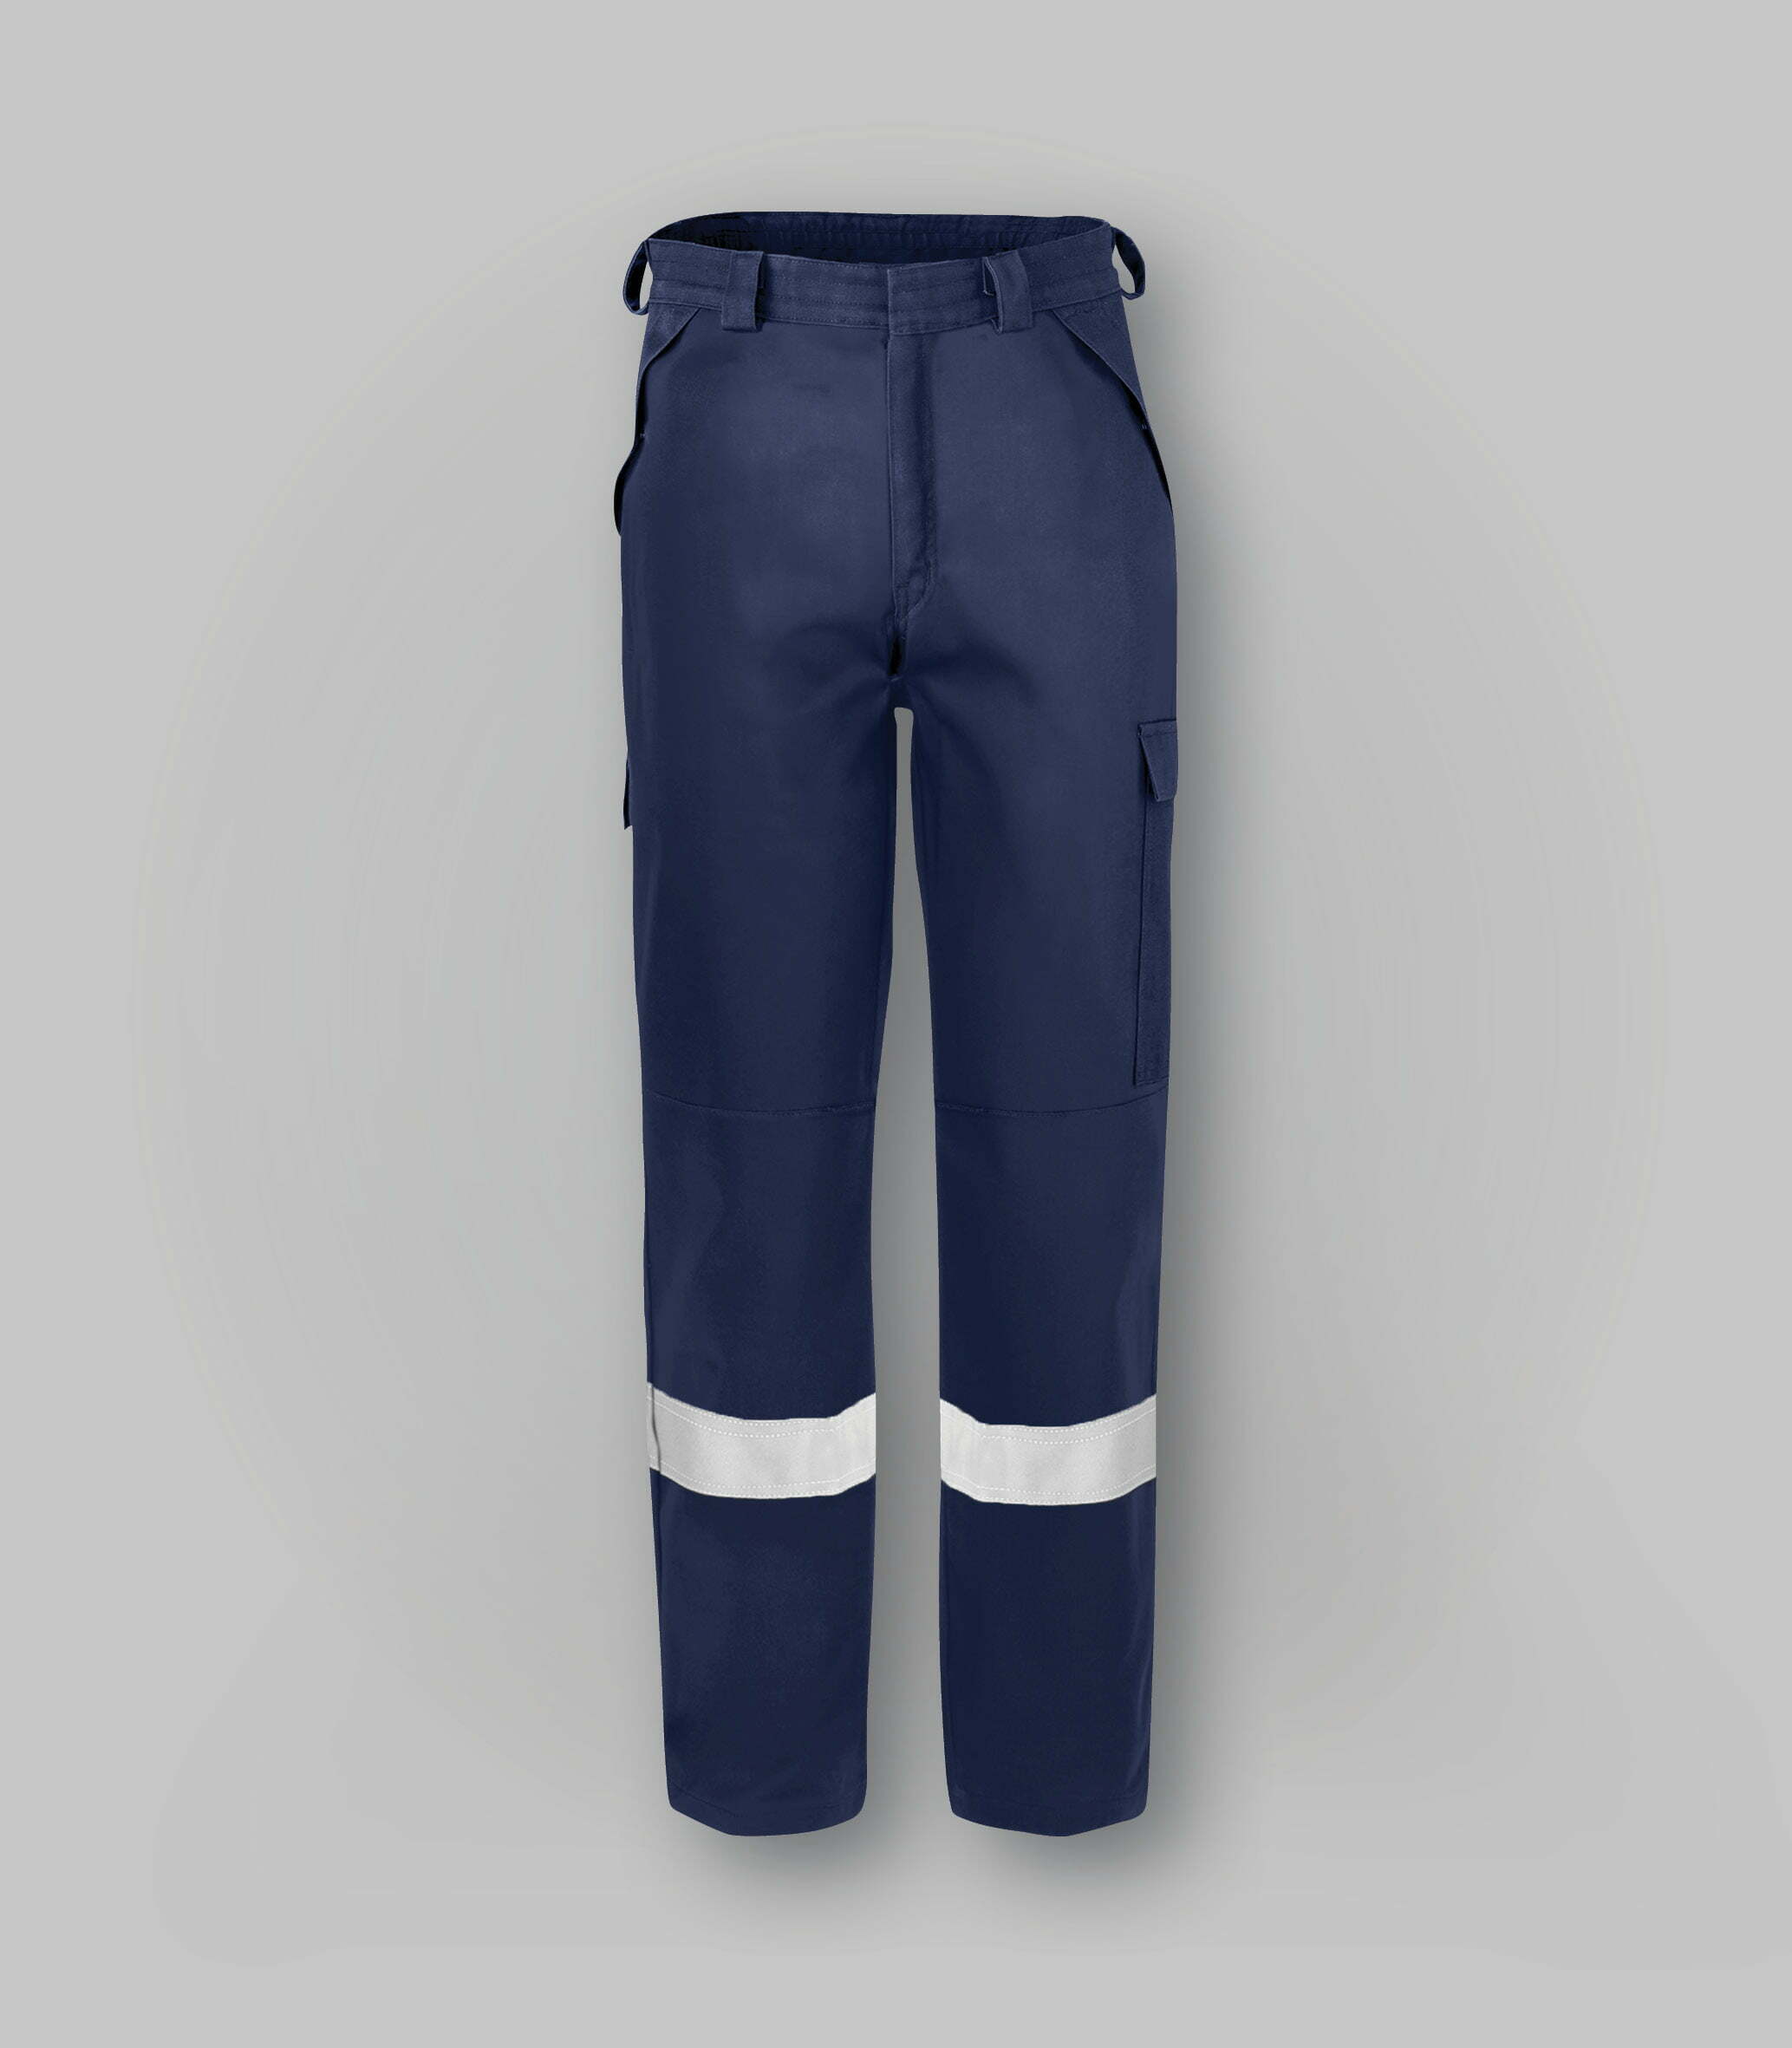 Pantaloni multinorma multitasche-abbigliamentocertificato.com